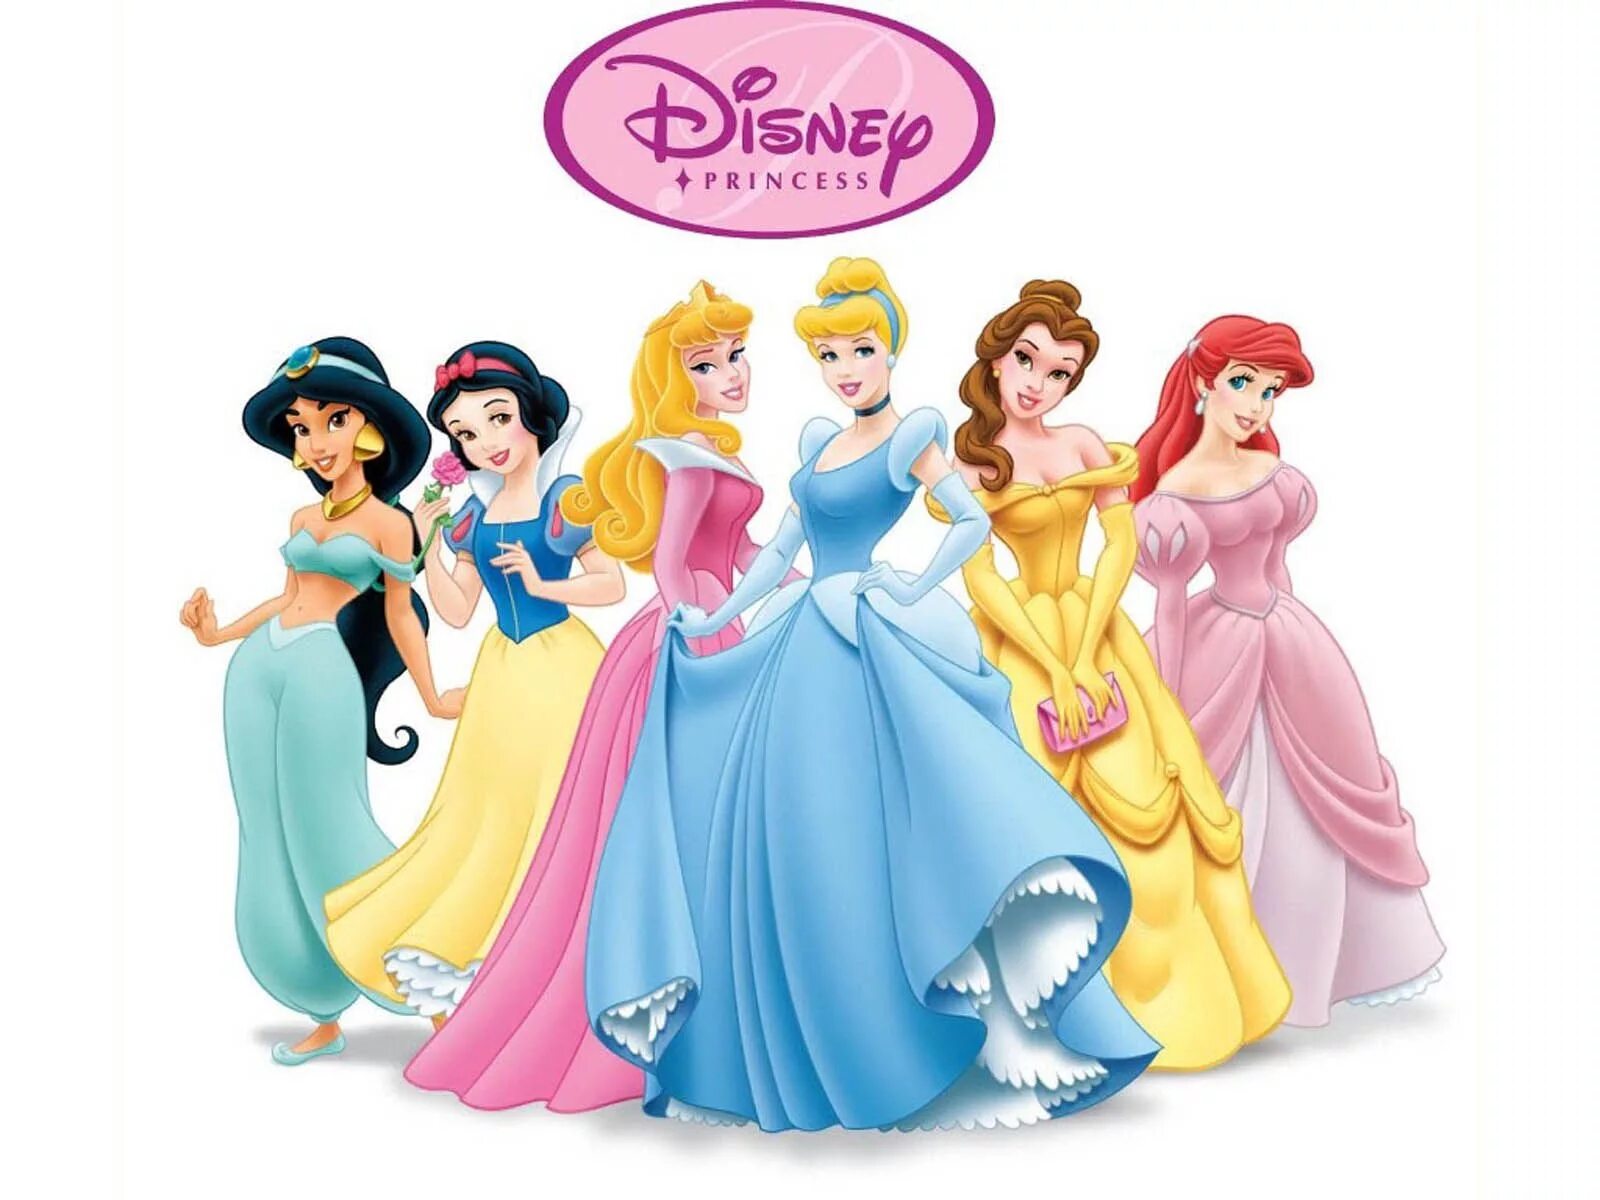 Картинки принцесс. Уолт Дисней. Принцесса: Белоснежка, Белль, Аврора. Золушка, Белоснежка, Аврора, Эльза, Бель, Жасмин, Ариель. Четыре принцессы. Принцессы Диснея вместе.